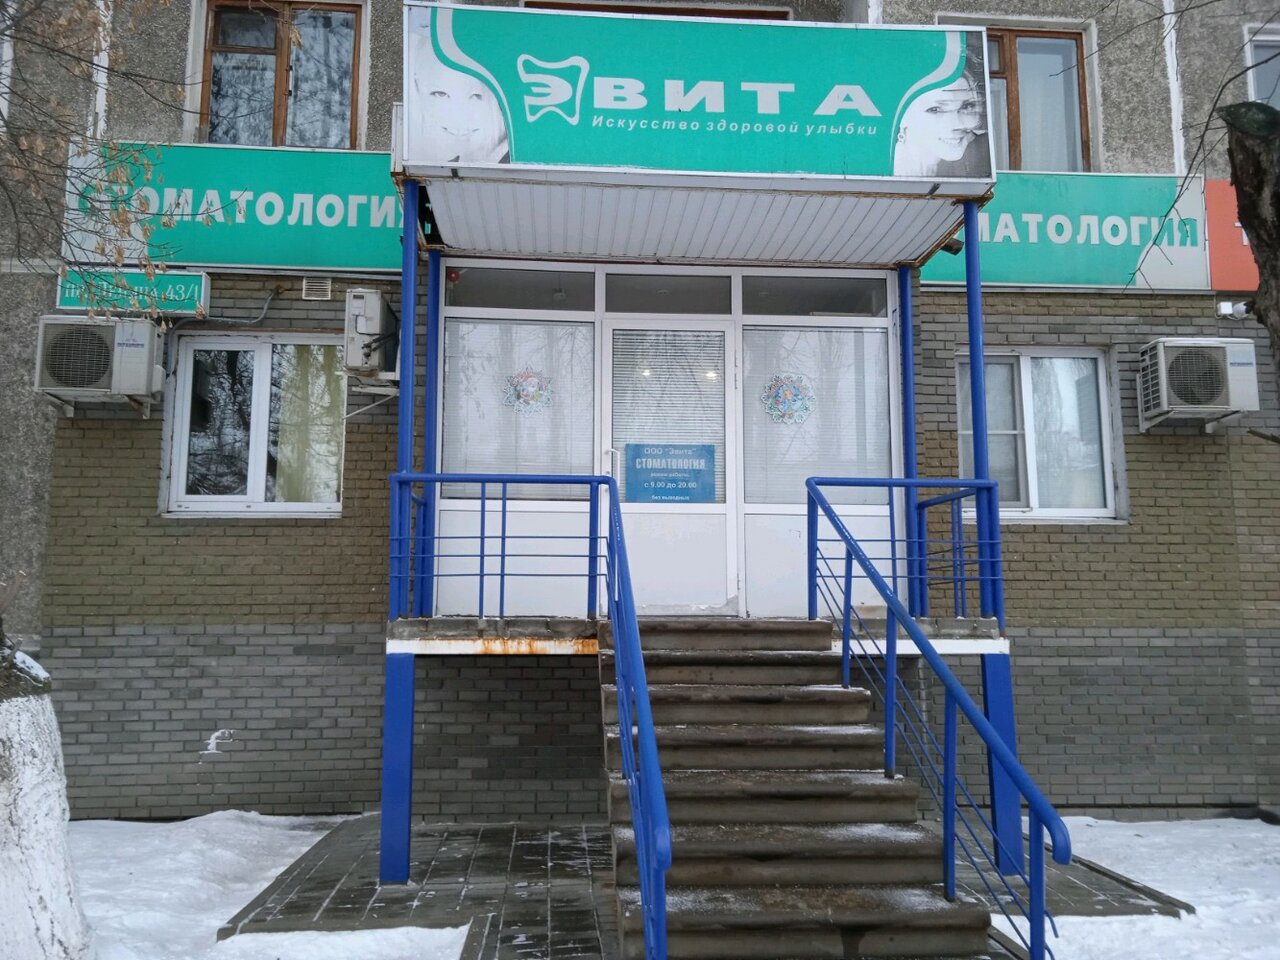 Стоматологическая клиника Эвита, Нижний Новгород, пр. Ленина, 43